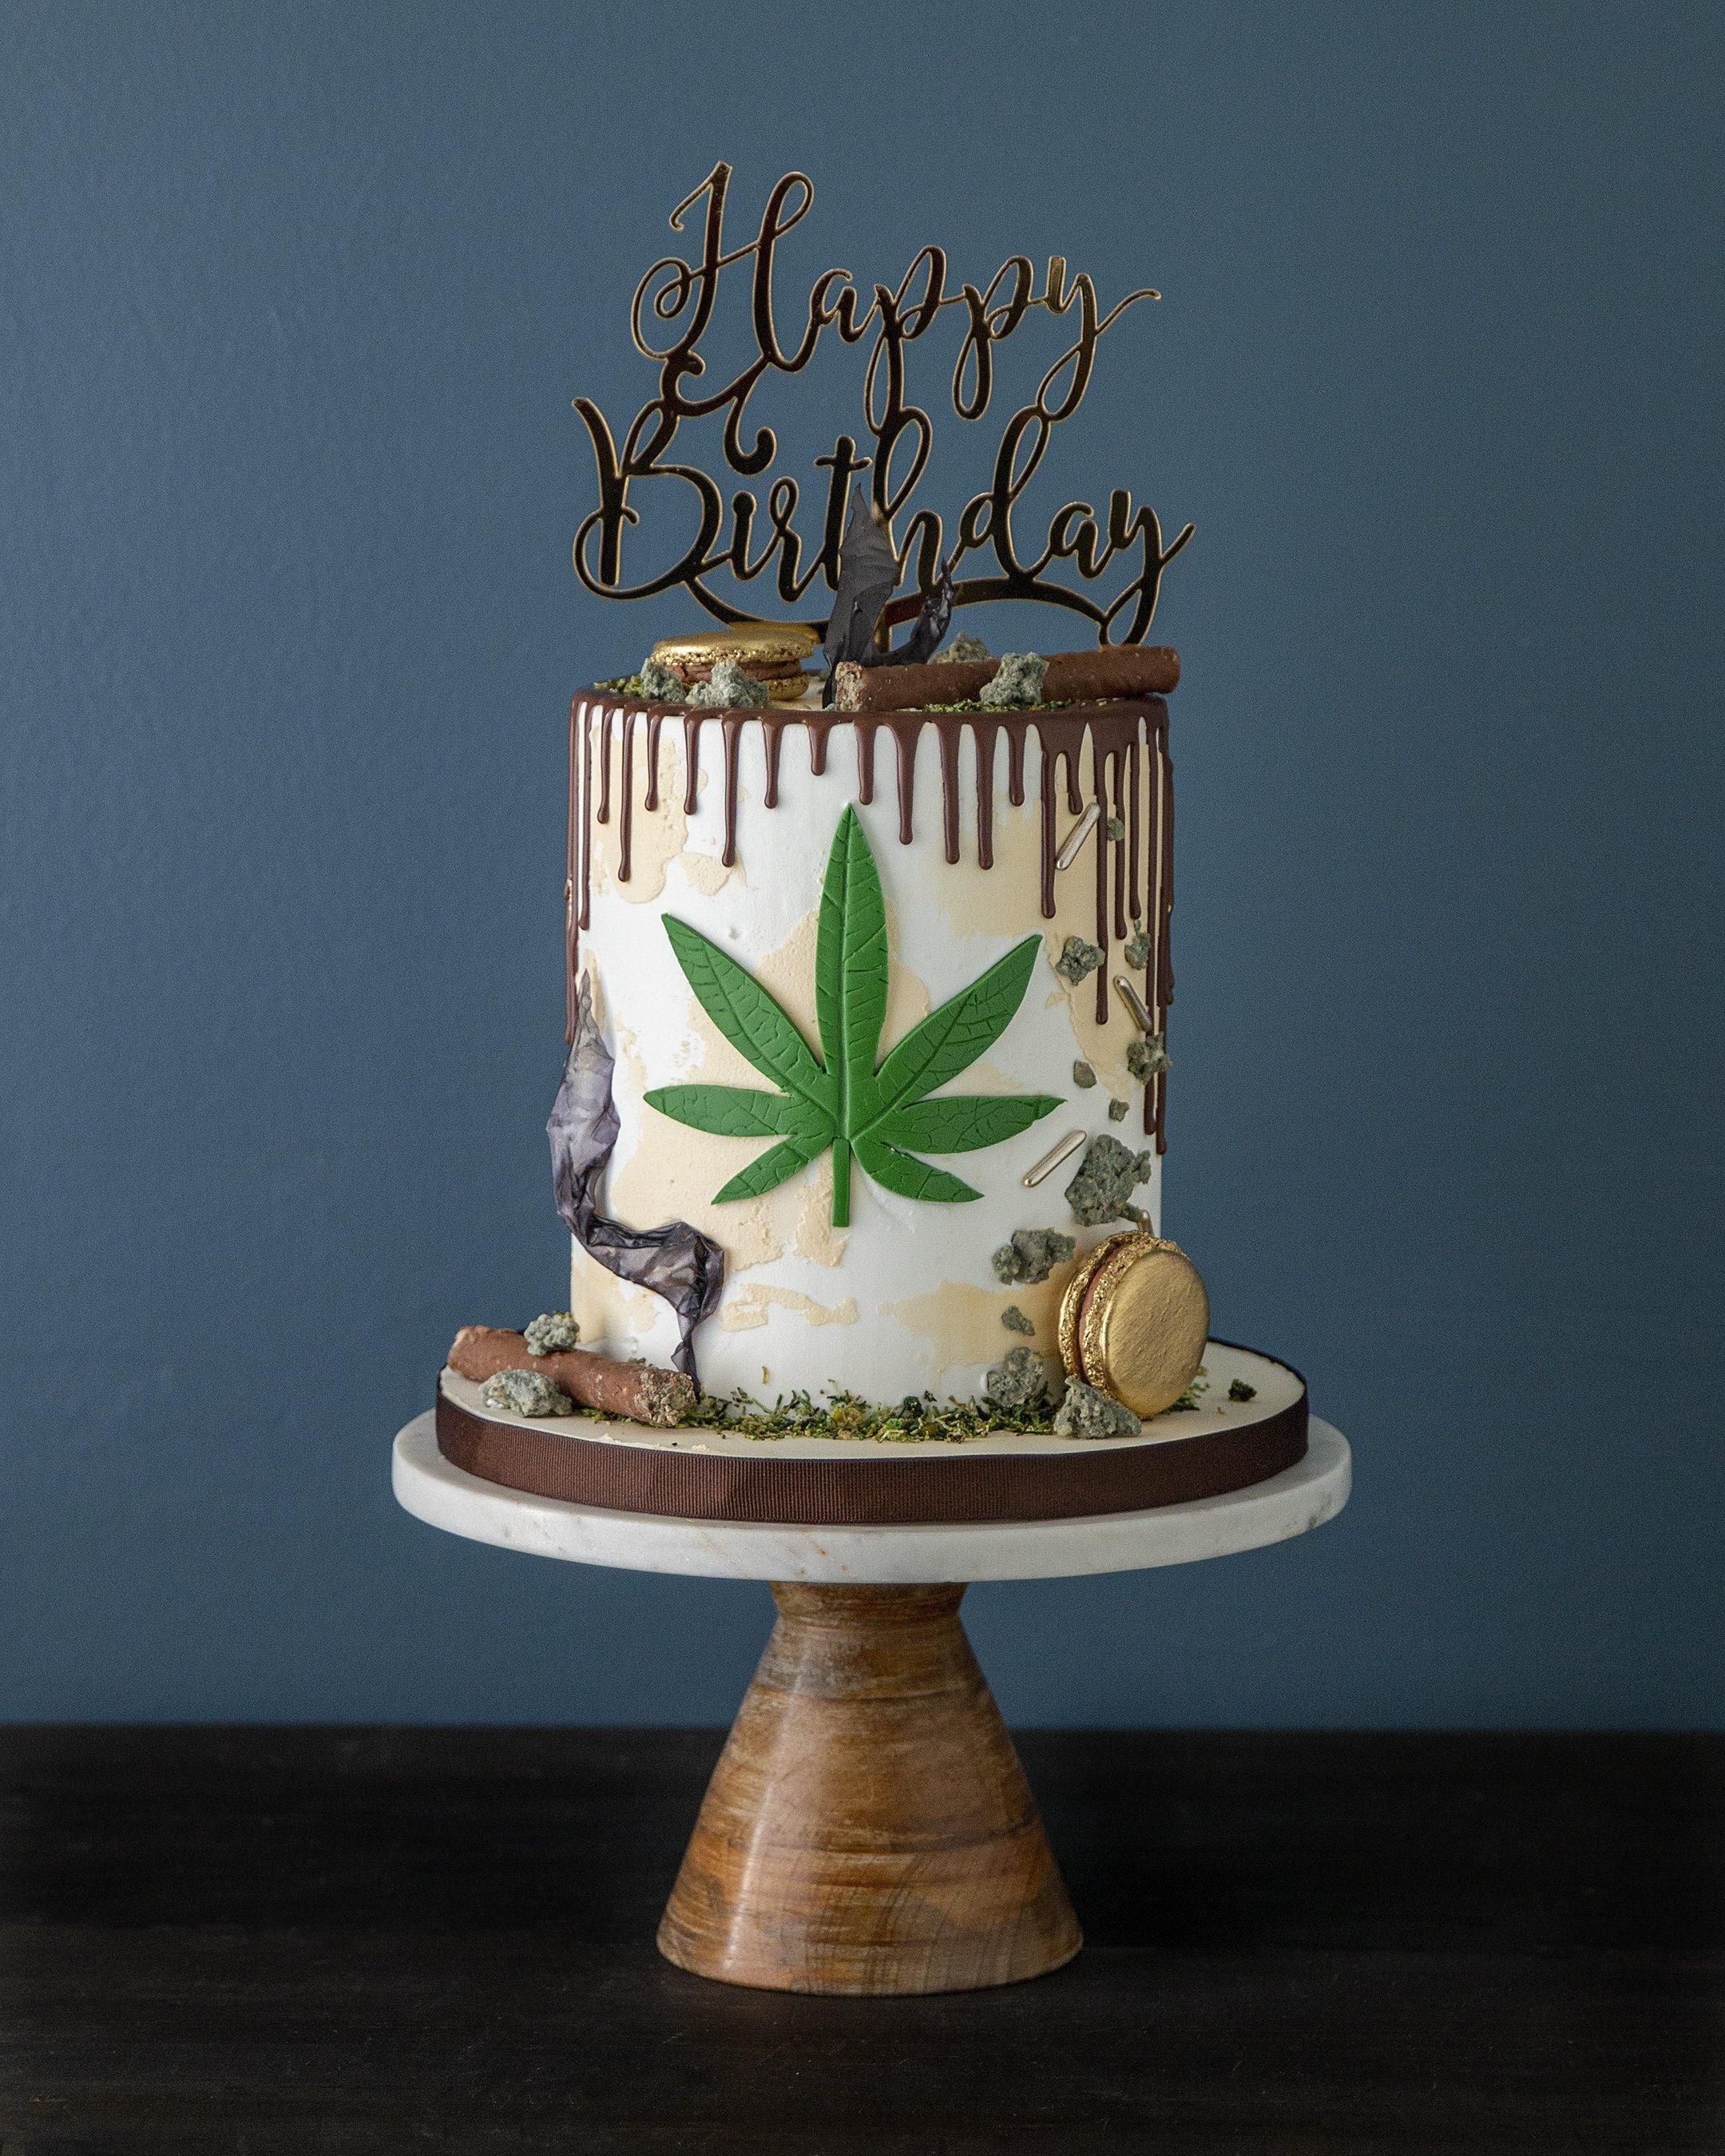 Best 420 cake ever - 9GAG